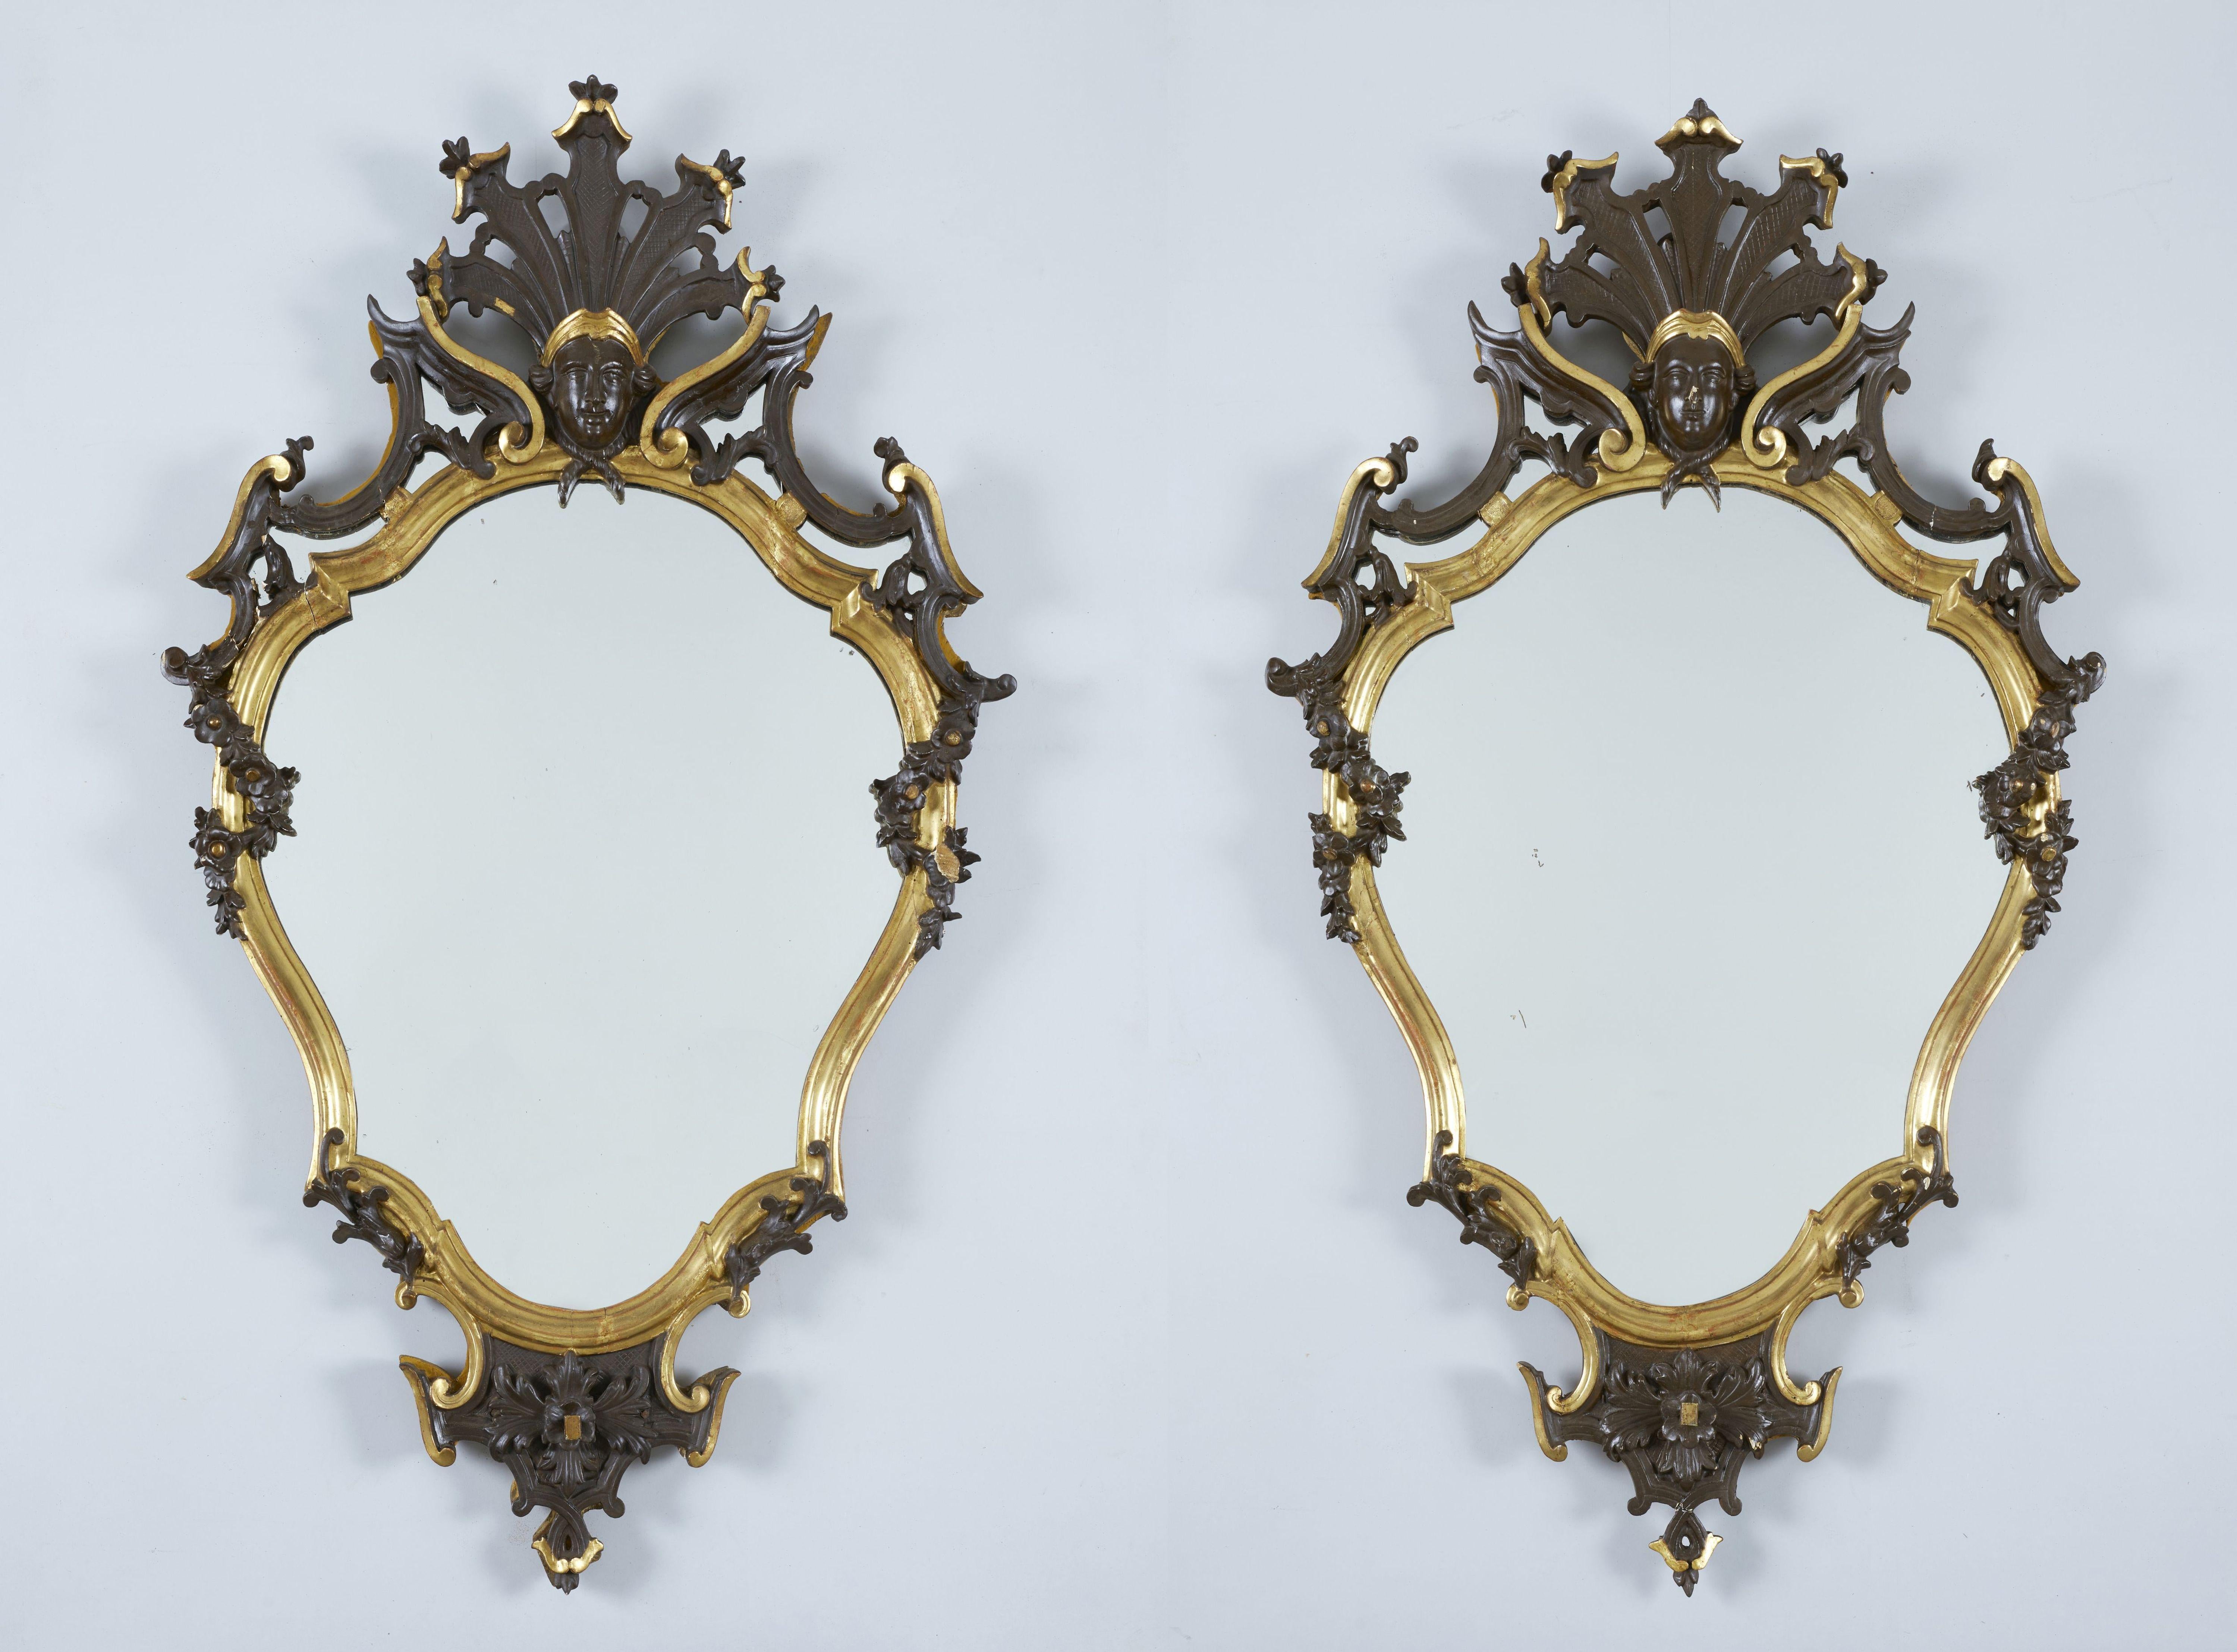 Paire de miroirs lombards Louis XVI de la seconde moitié du XVIIIe siècle mesurant 116 x 65 cm avec verre au mercure d'origine.

Cette paire de miroirs, merveilleuse et surtout bien sculptée, présente le style incomparable de l'art lombard,